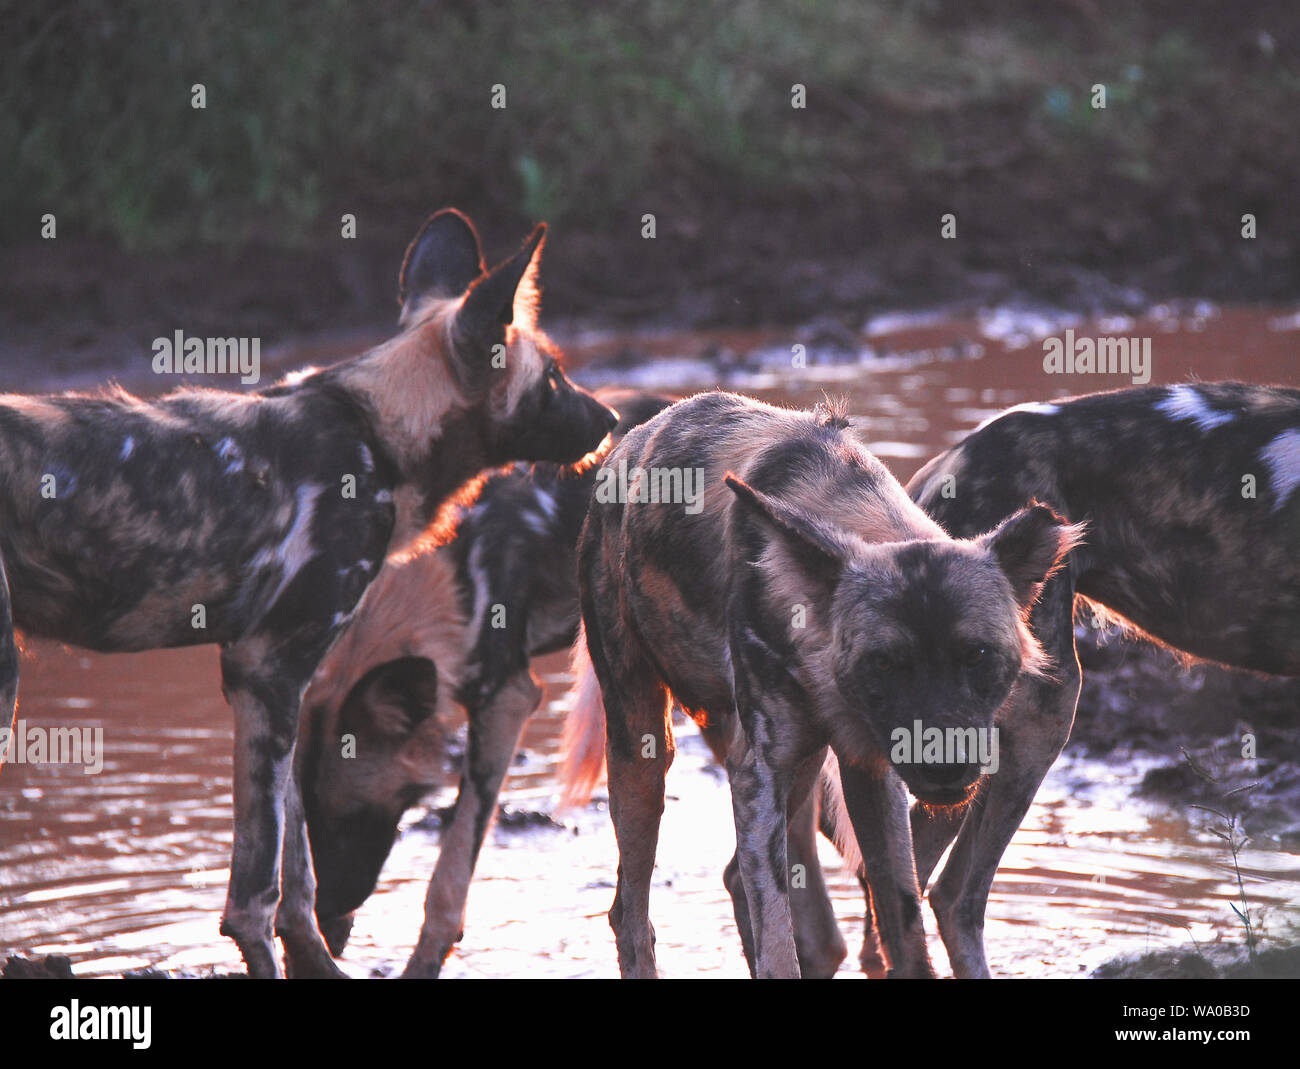 Eine schöne Tierwelt Szene einer Packung Jagd wilde Hunde, enge und persönliche, am Nachmittag. Auf Safari in Südafrika fotografiert. Stockfoto